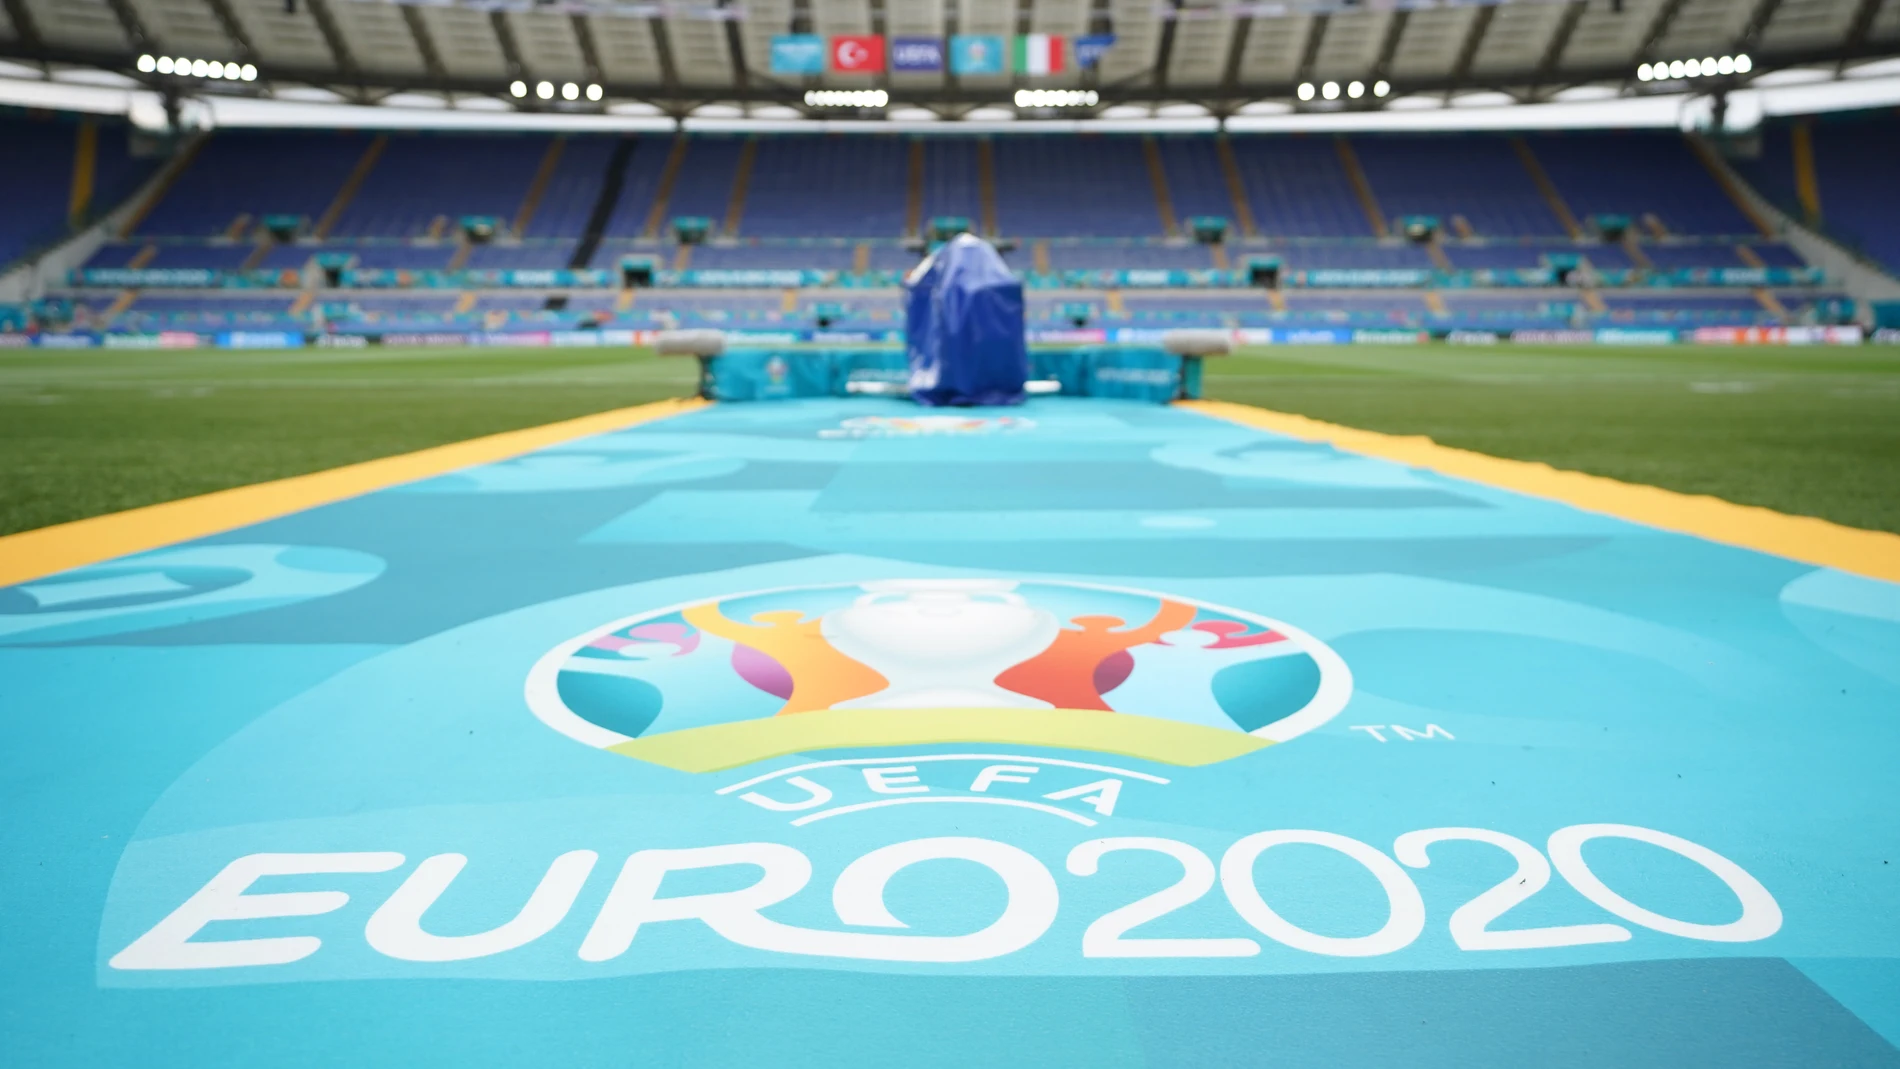 Eurocopa 2021: Grupos, calendario, partidos y sedes 